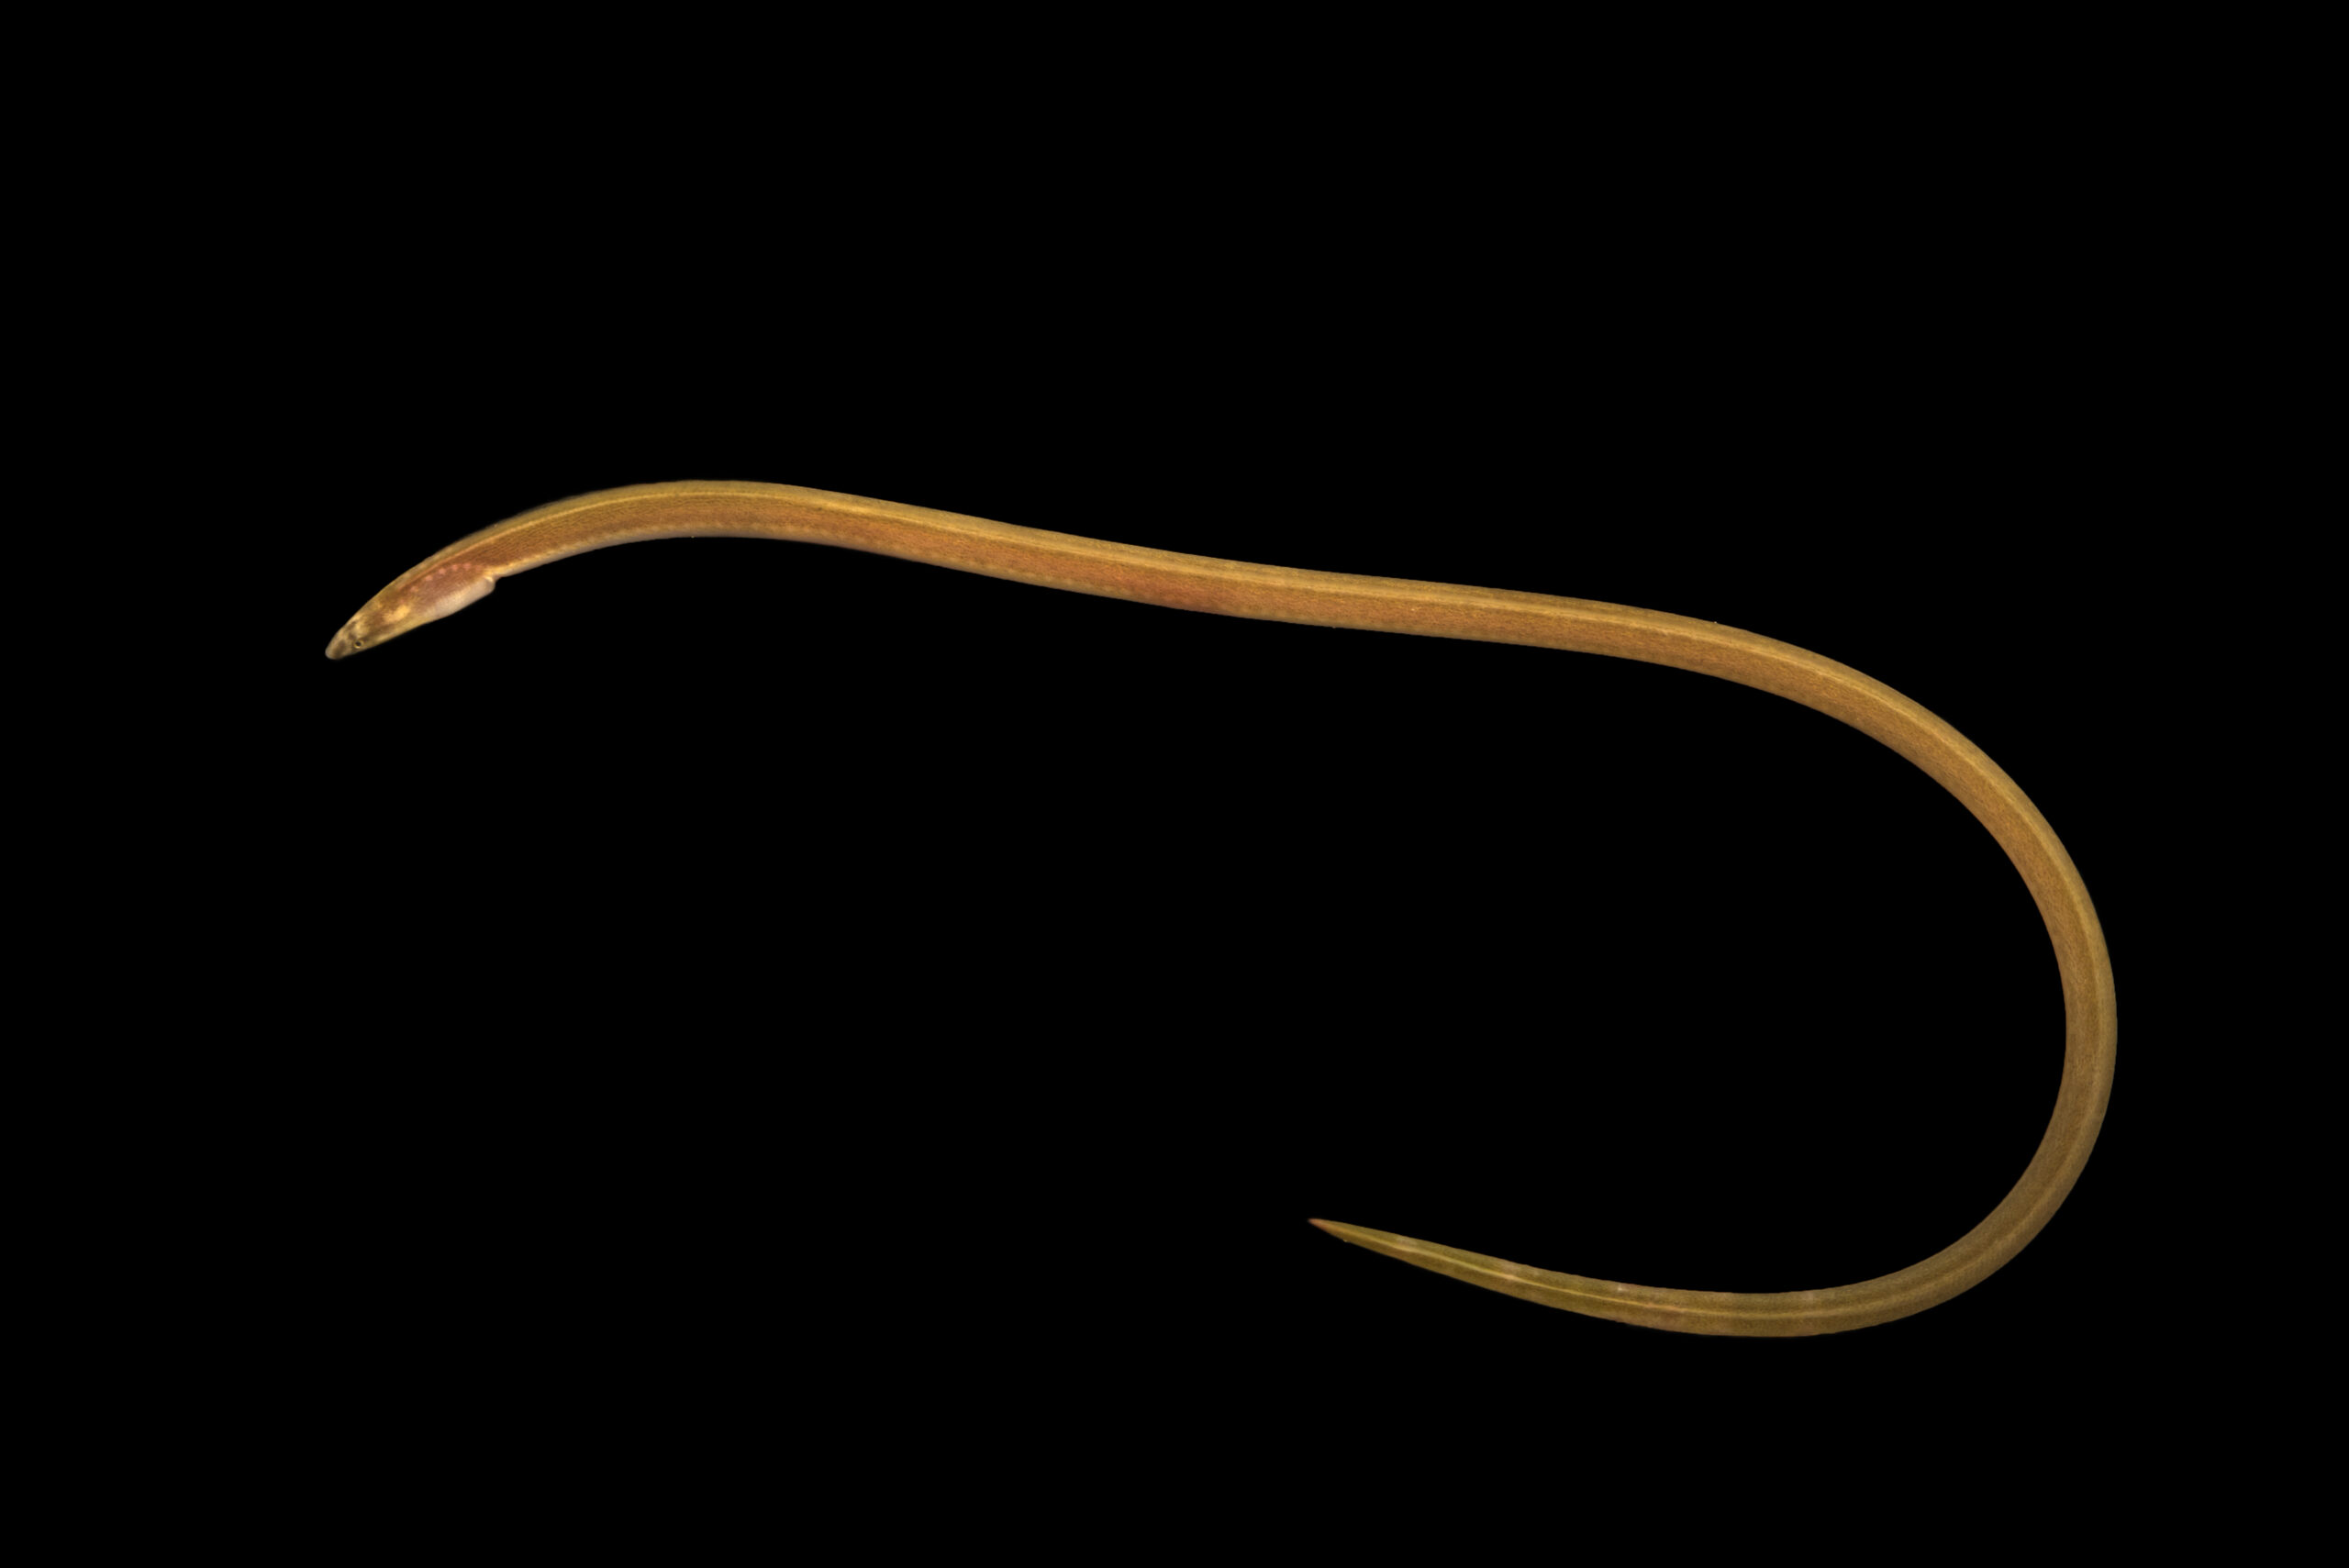 Sand eel (Ophichthus gomesii) at Gulf Specimen Marine Lab and Aquarium.